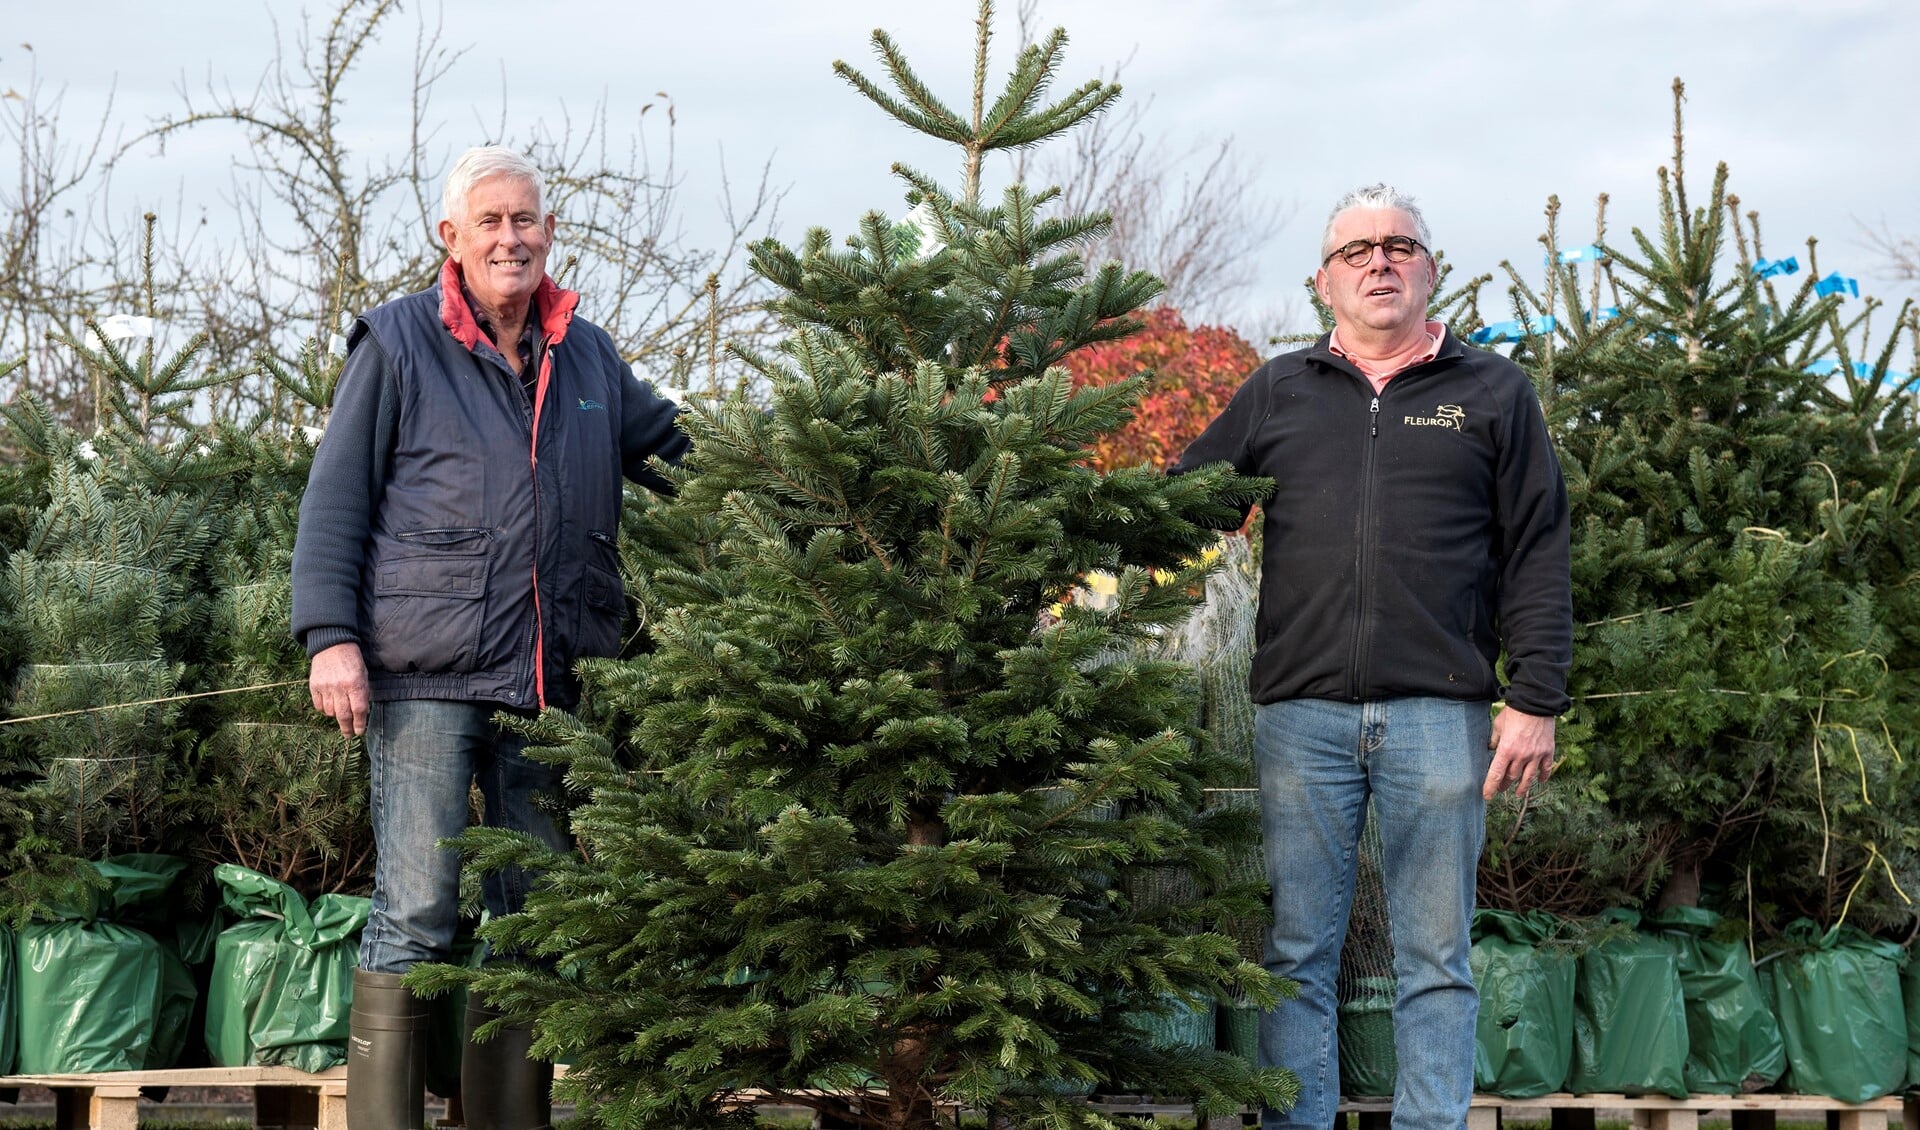 De kerstbomenverkoop bij Hagestein en Roskam gaat vrijdag van start!